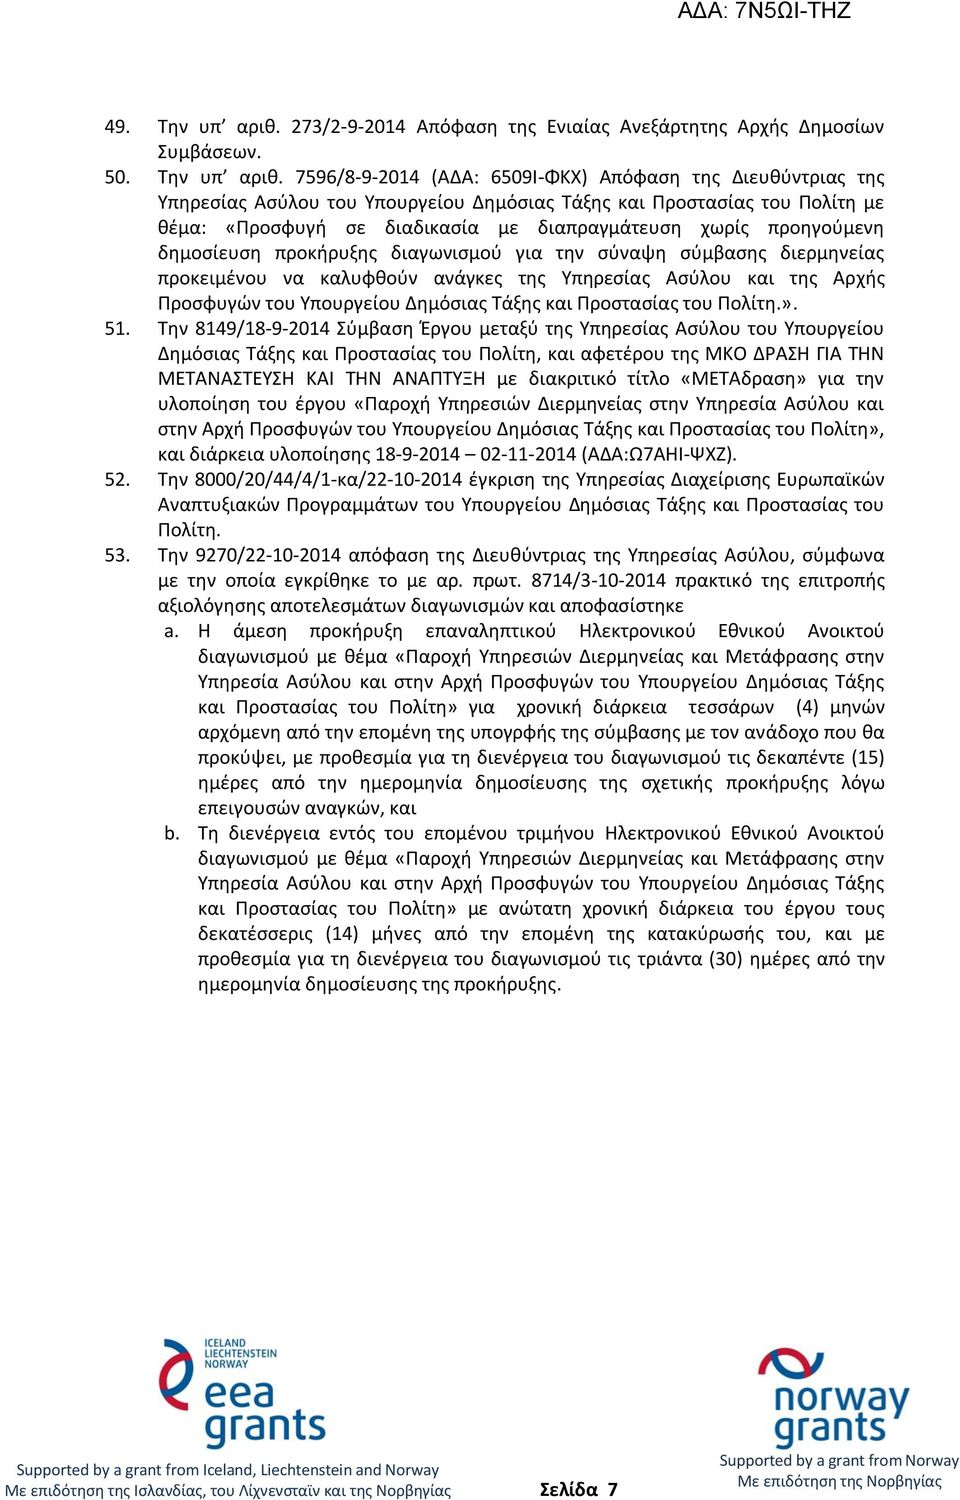 7596/8-9-2014 (ΑΔΑ: 6509Ι-ΦΚΧ) Απόφαση της Διευθύντριας της Υπηρεσίας Ασύλου του Υπουργείου Δημόσιας Τάξης και Προστασίας του Πολίτη με θέμα: «Προσφυγή σε διαδικασία με διαπραγμάτευση χωρίς